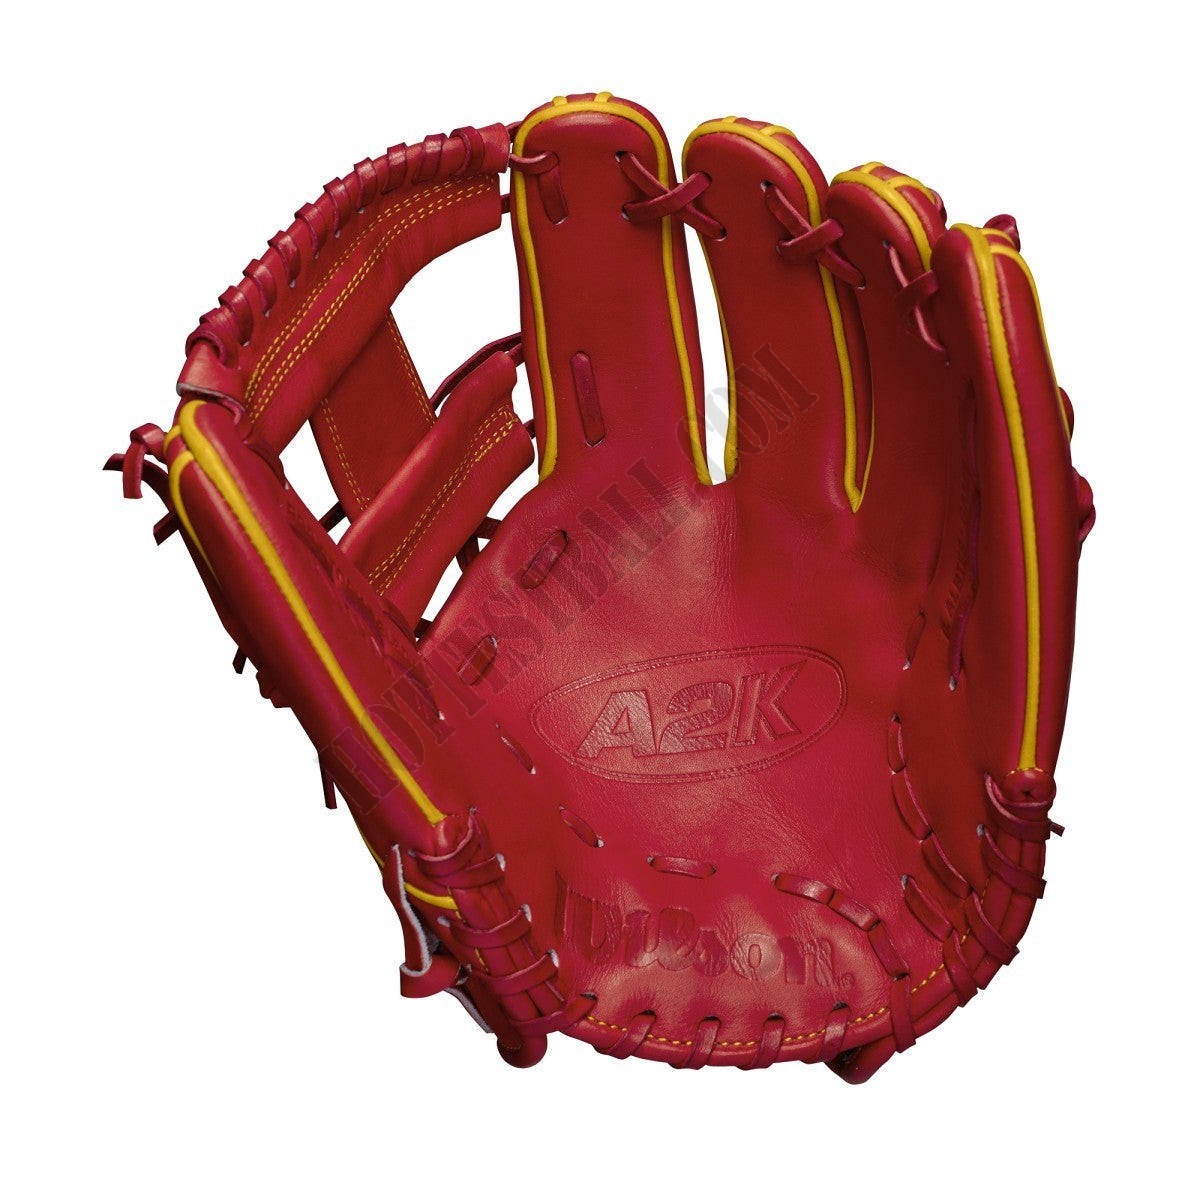 2021 A2K OA1 GM 11.5" Infield Baseball Glove ● Wilson Promotions - -2